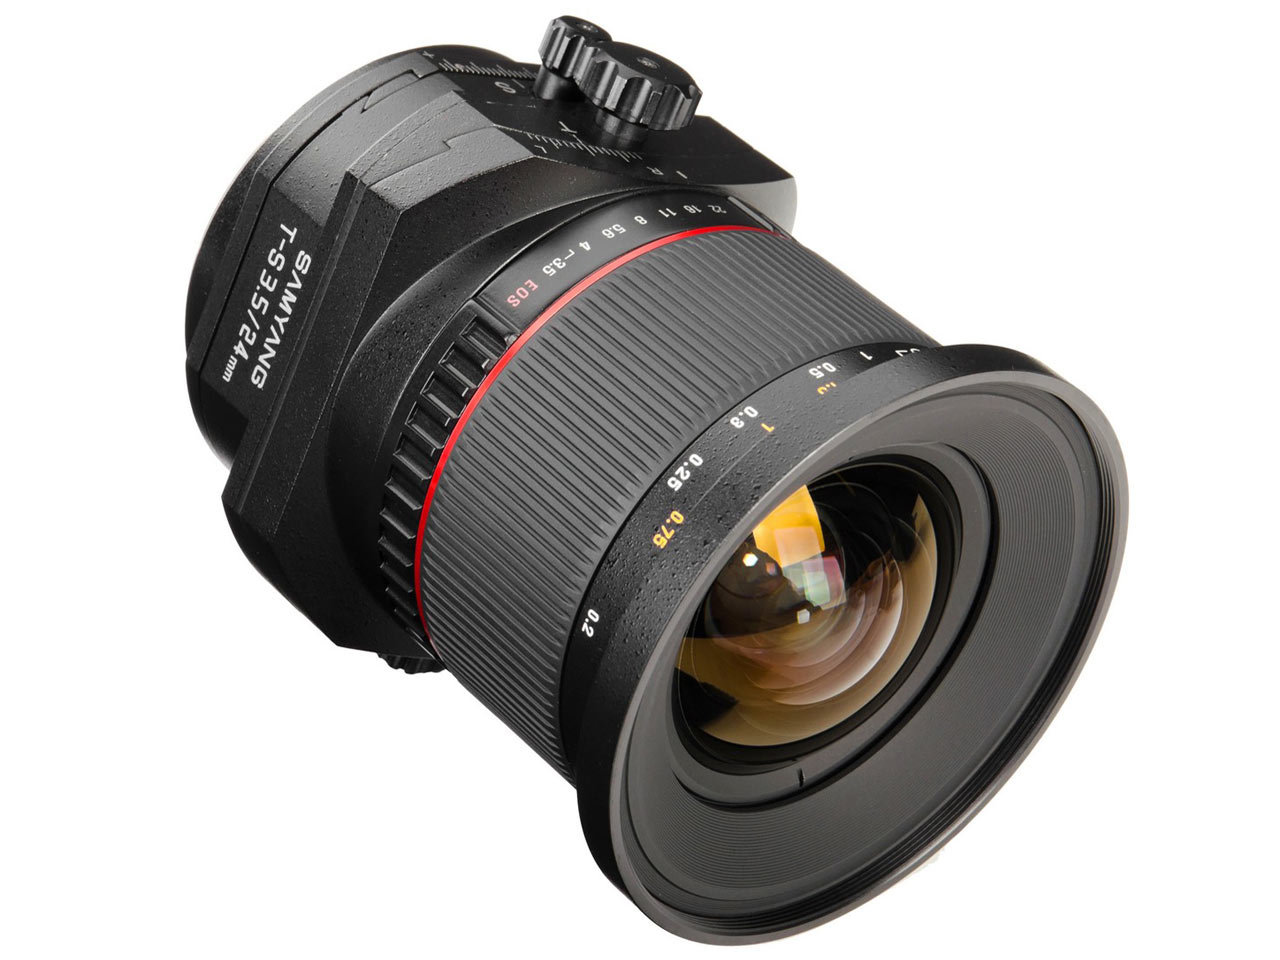 Samyang Tilt-Shift 24mm Lens Announced